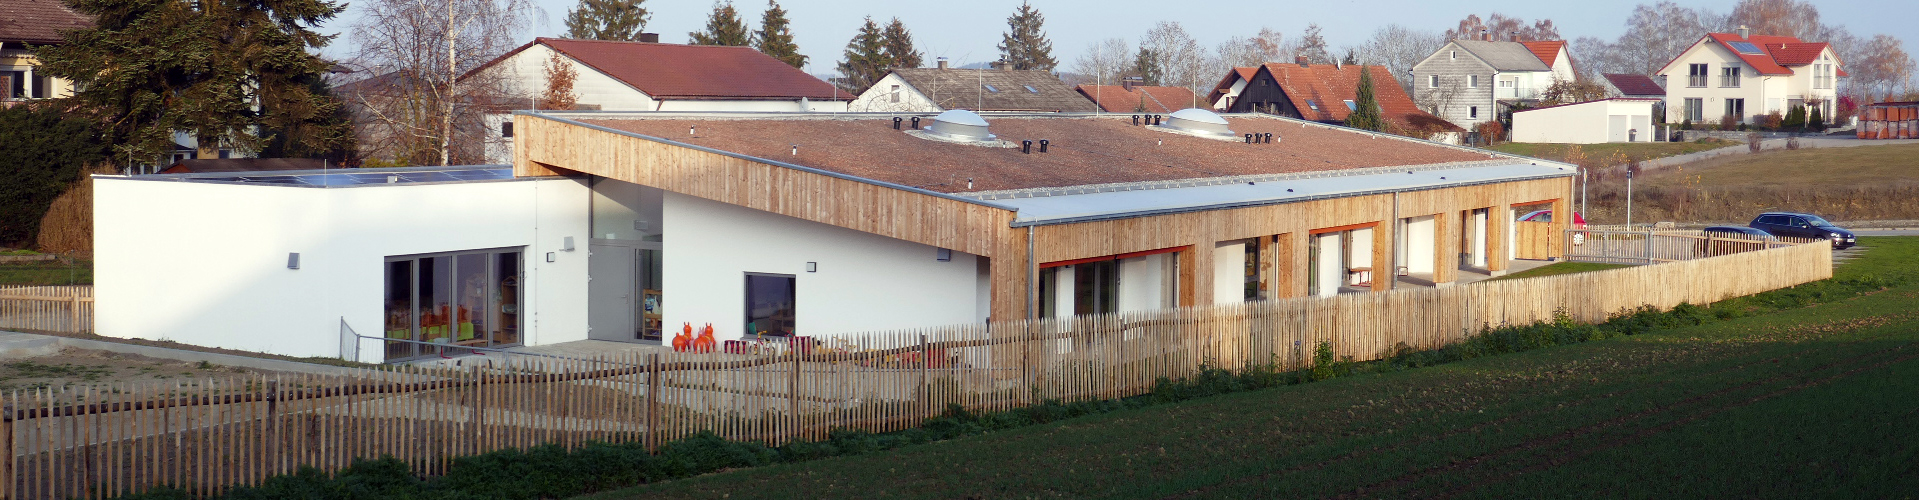 Blick auf den Kindergarten Velden II, Foto: Heike Arnold, Ortsentwicklung